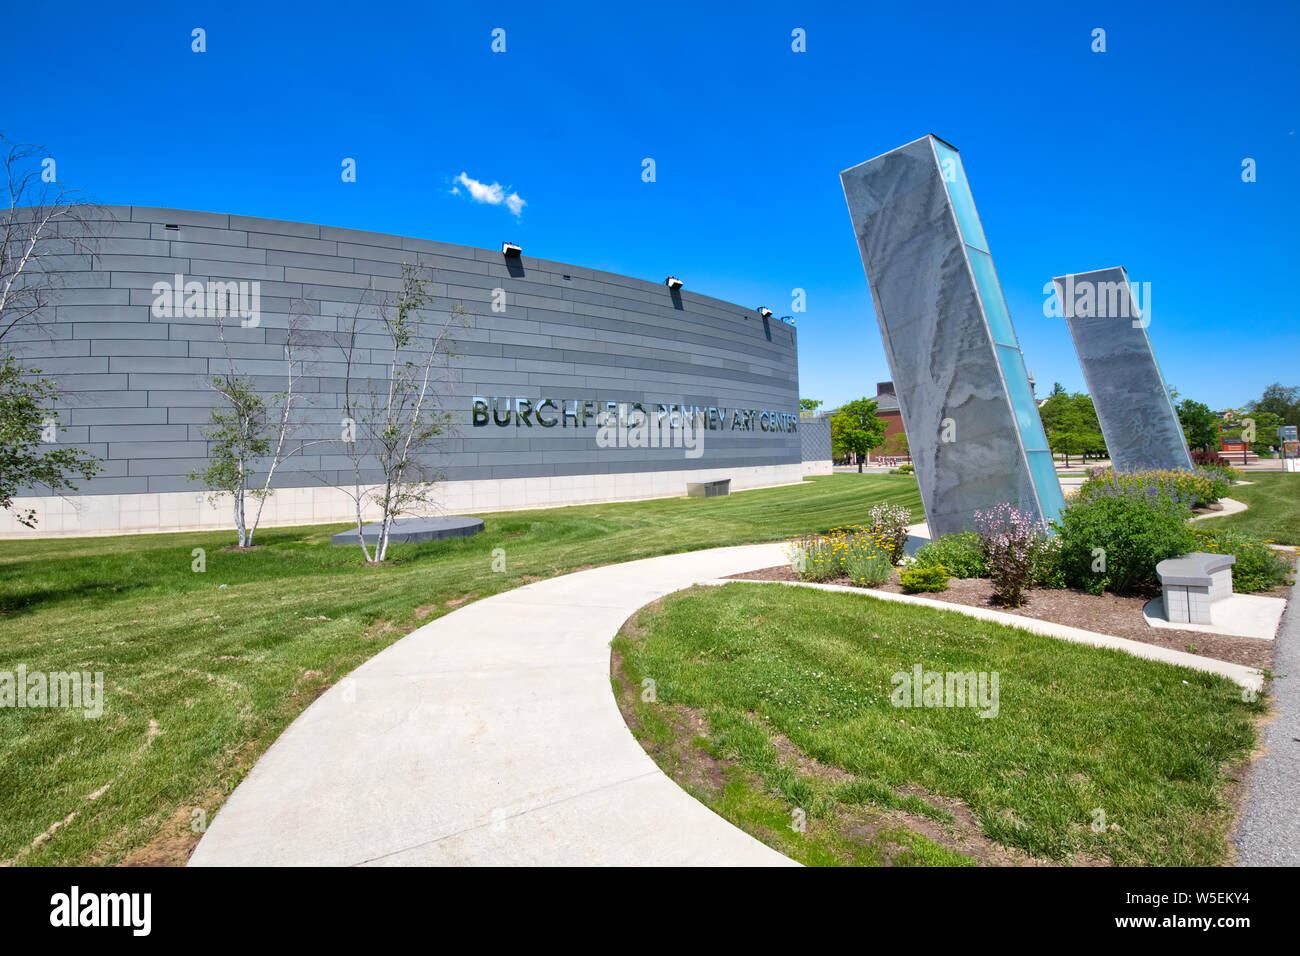 Buffalo, USA-20 Juli, 2019: burchfield Penney Art Center, ein Kunst- und Bildungsinstitution Teil der Buffalo State College Stockfoto